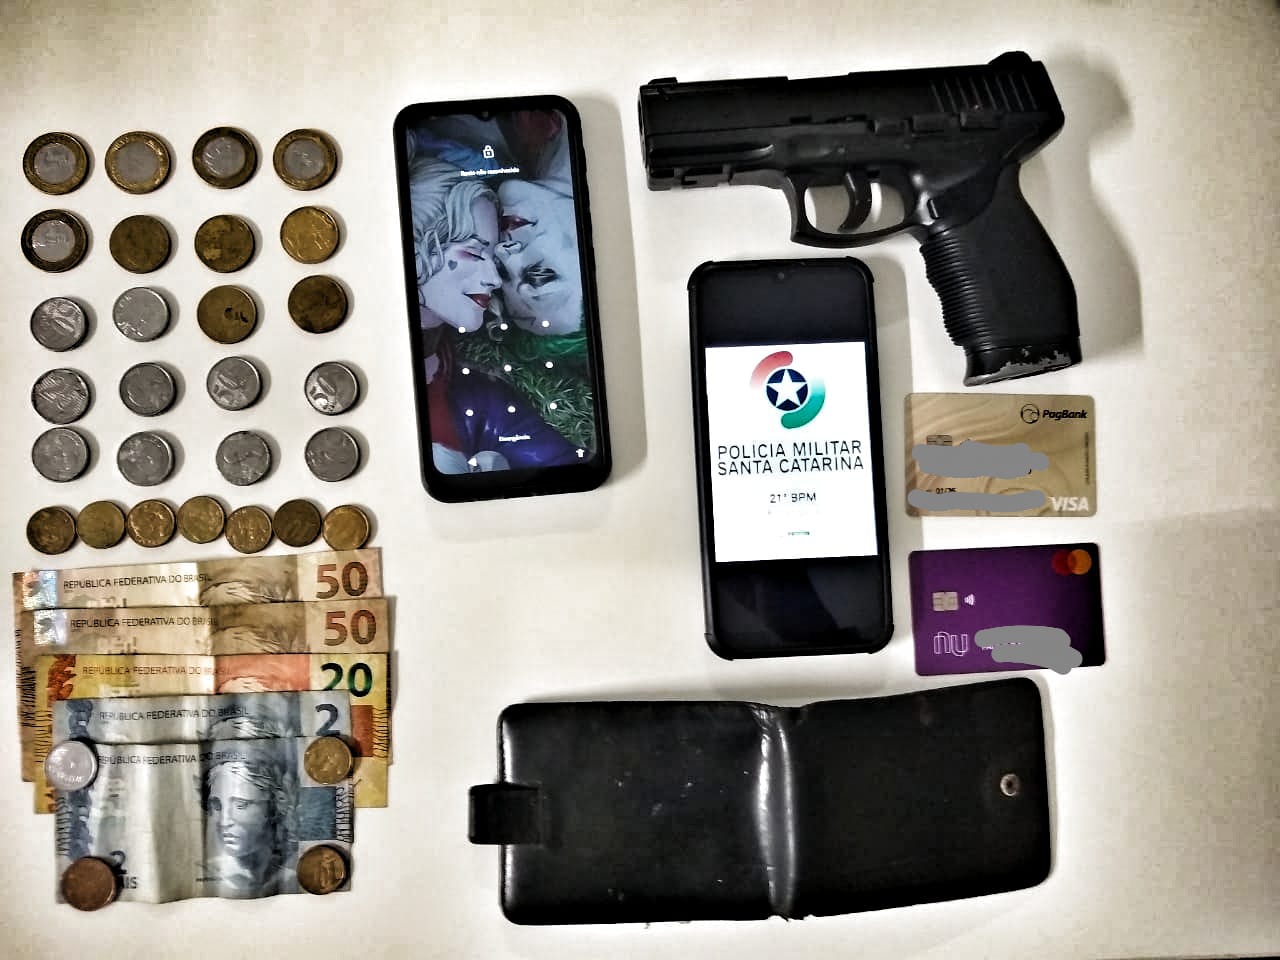 Simulacro de pistola, dinheiro e pertences foram recuperados | Foto Divulgação/PMSC